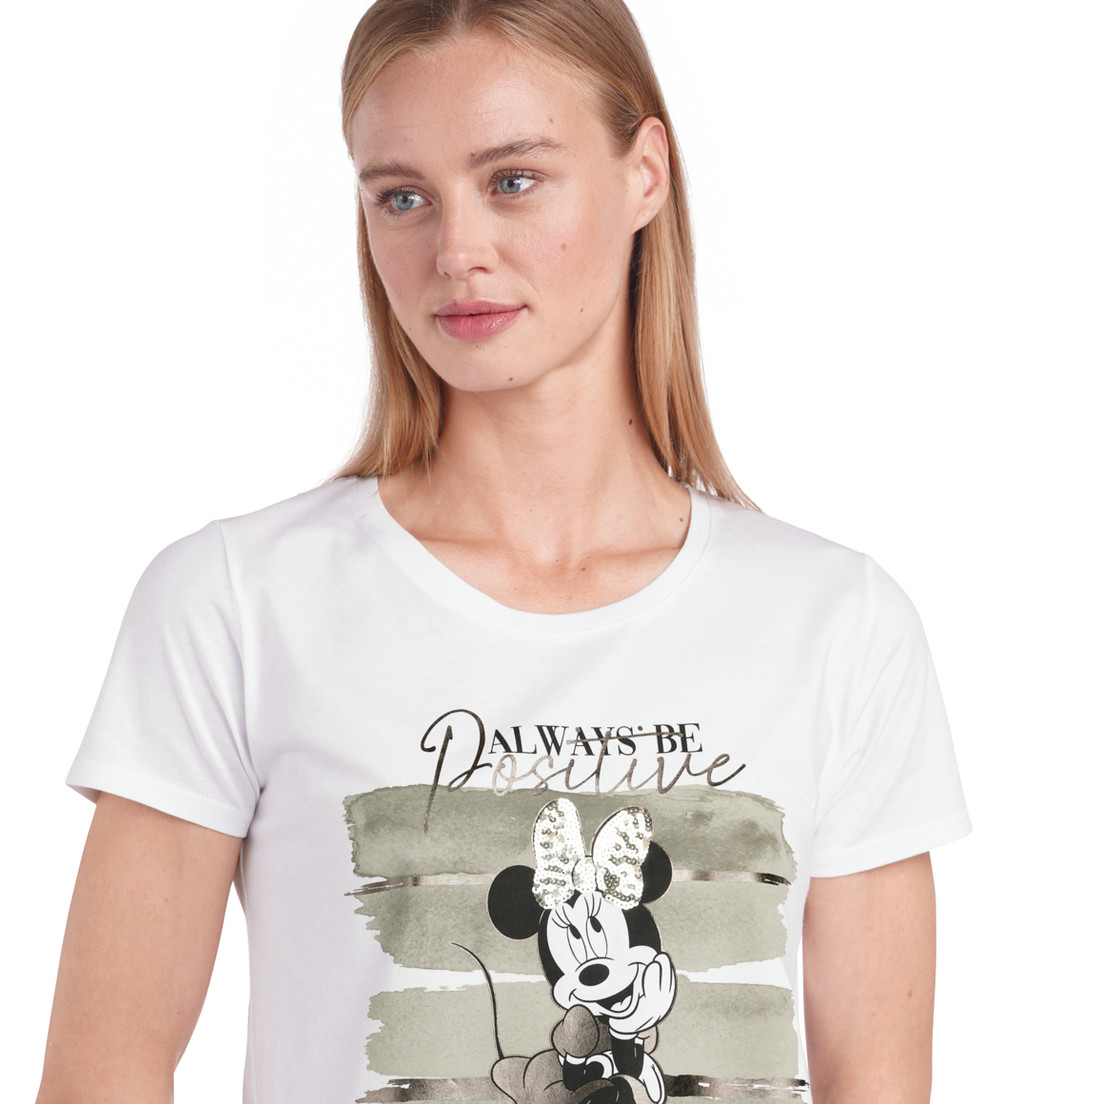 T-shirt minnie mouse - Damen